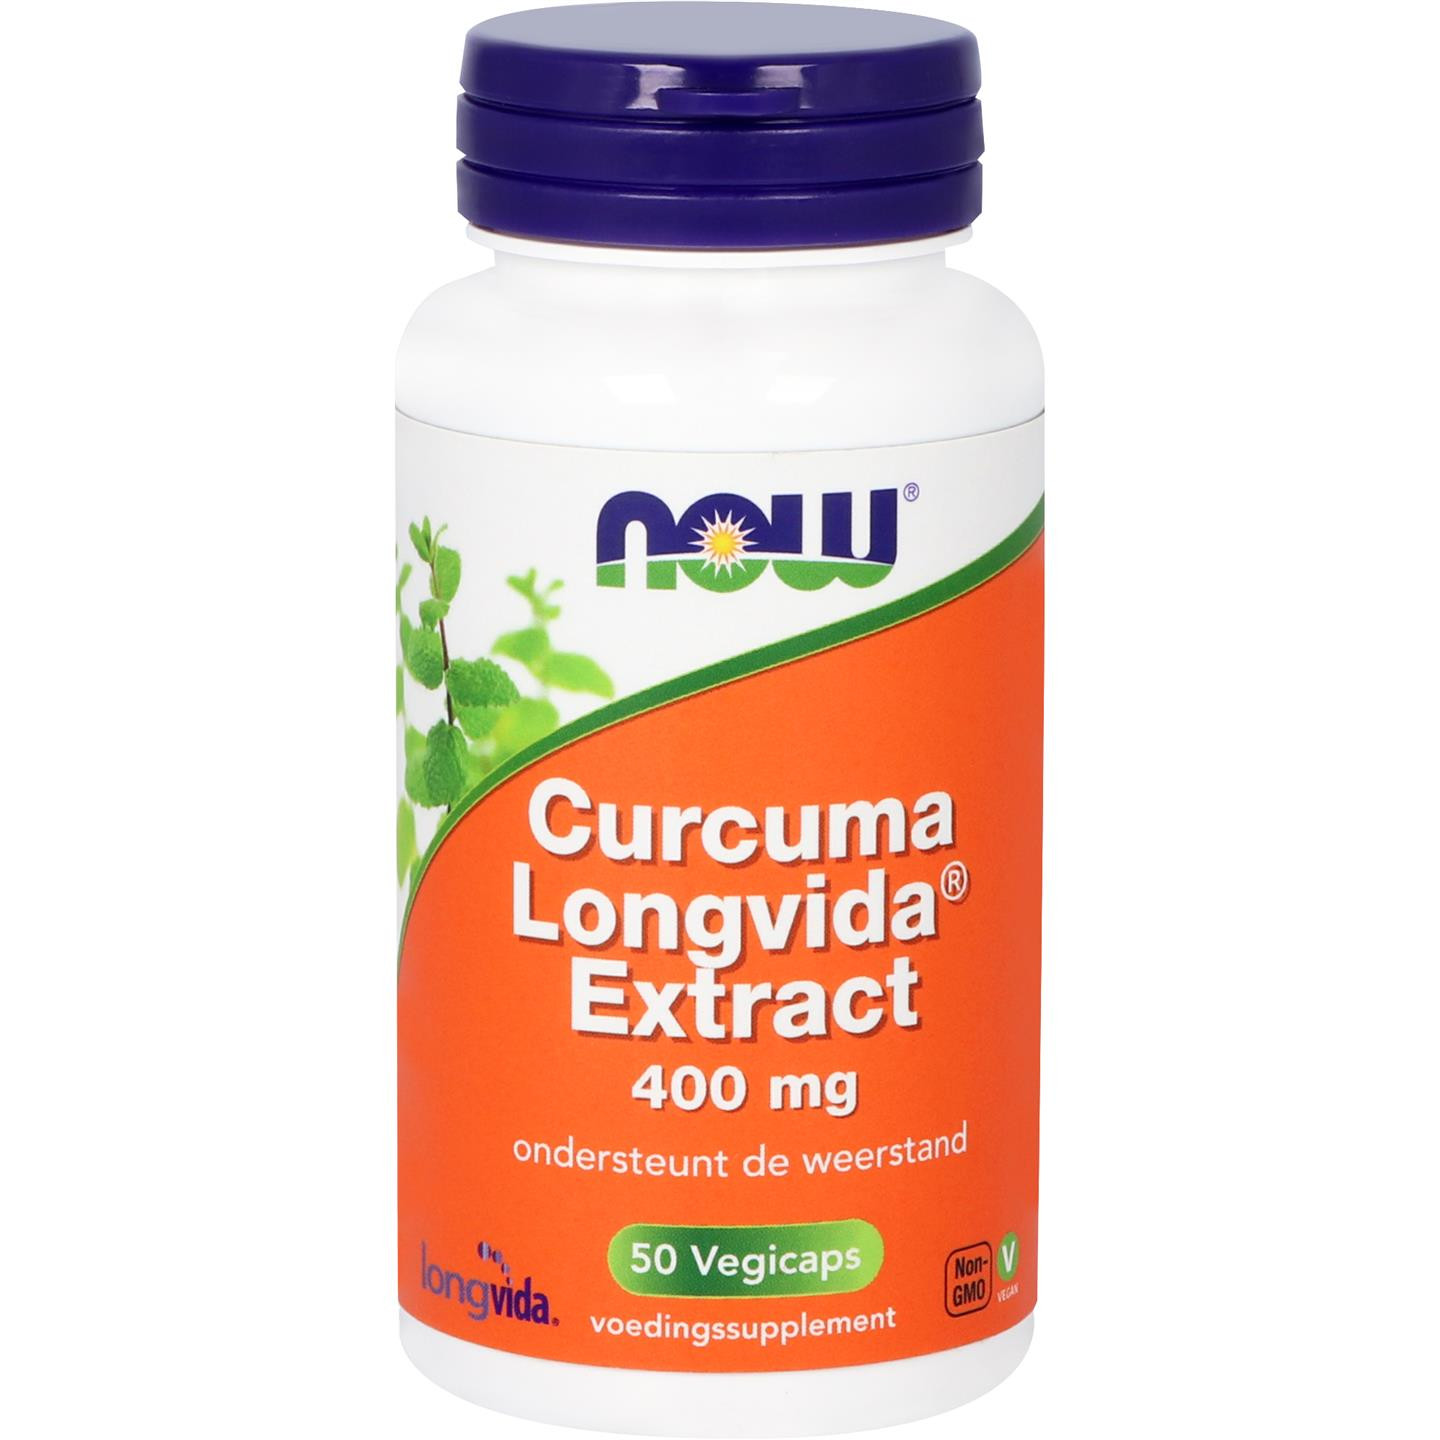 Curcuma longvida extract 400 mg